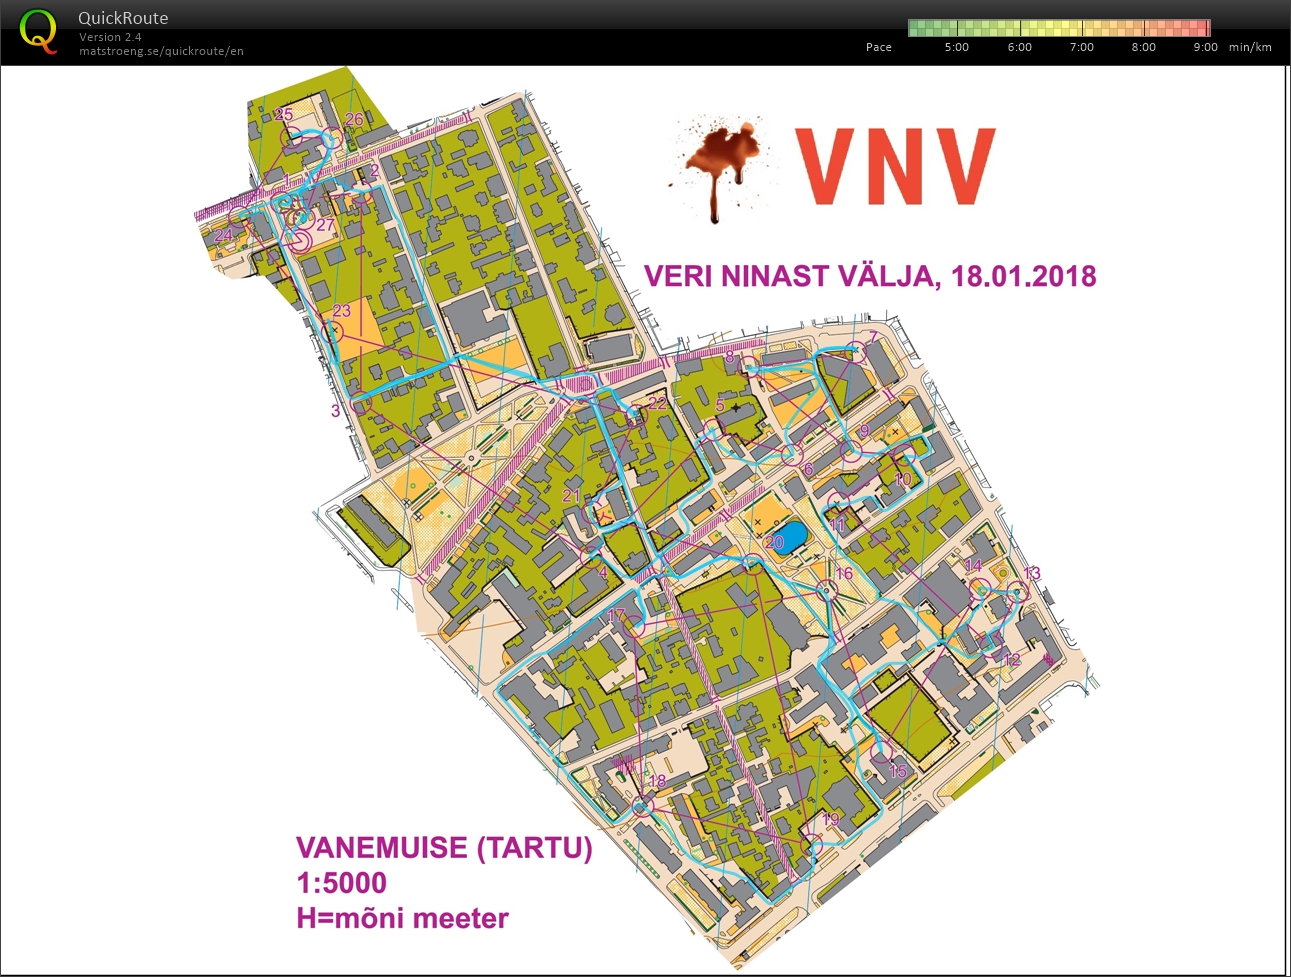 VNV 18.01 (18/01/2018)